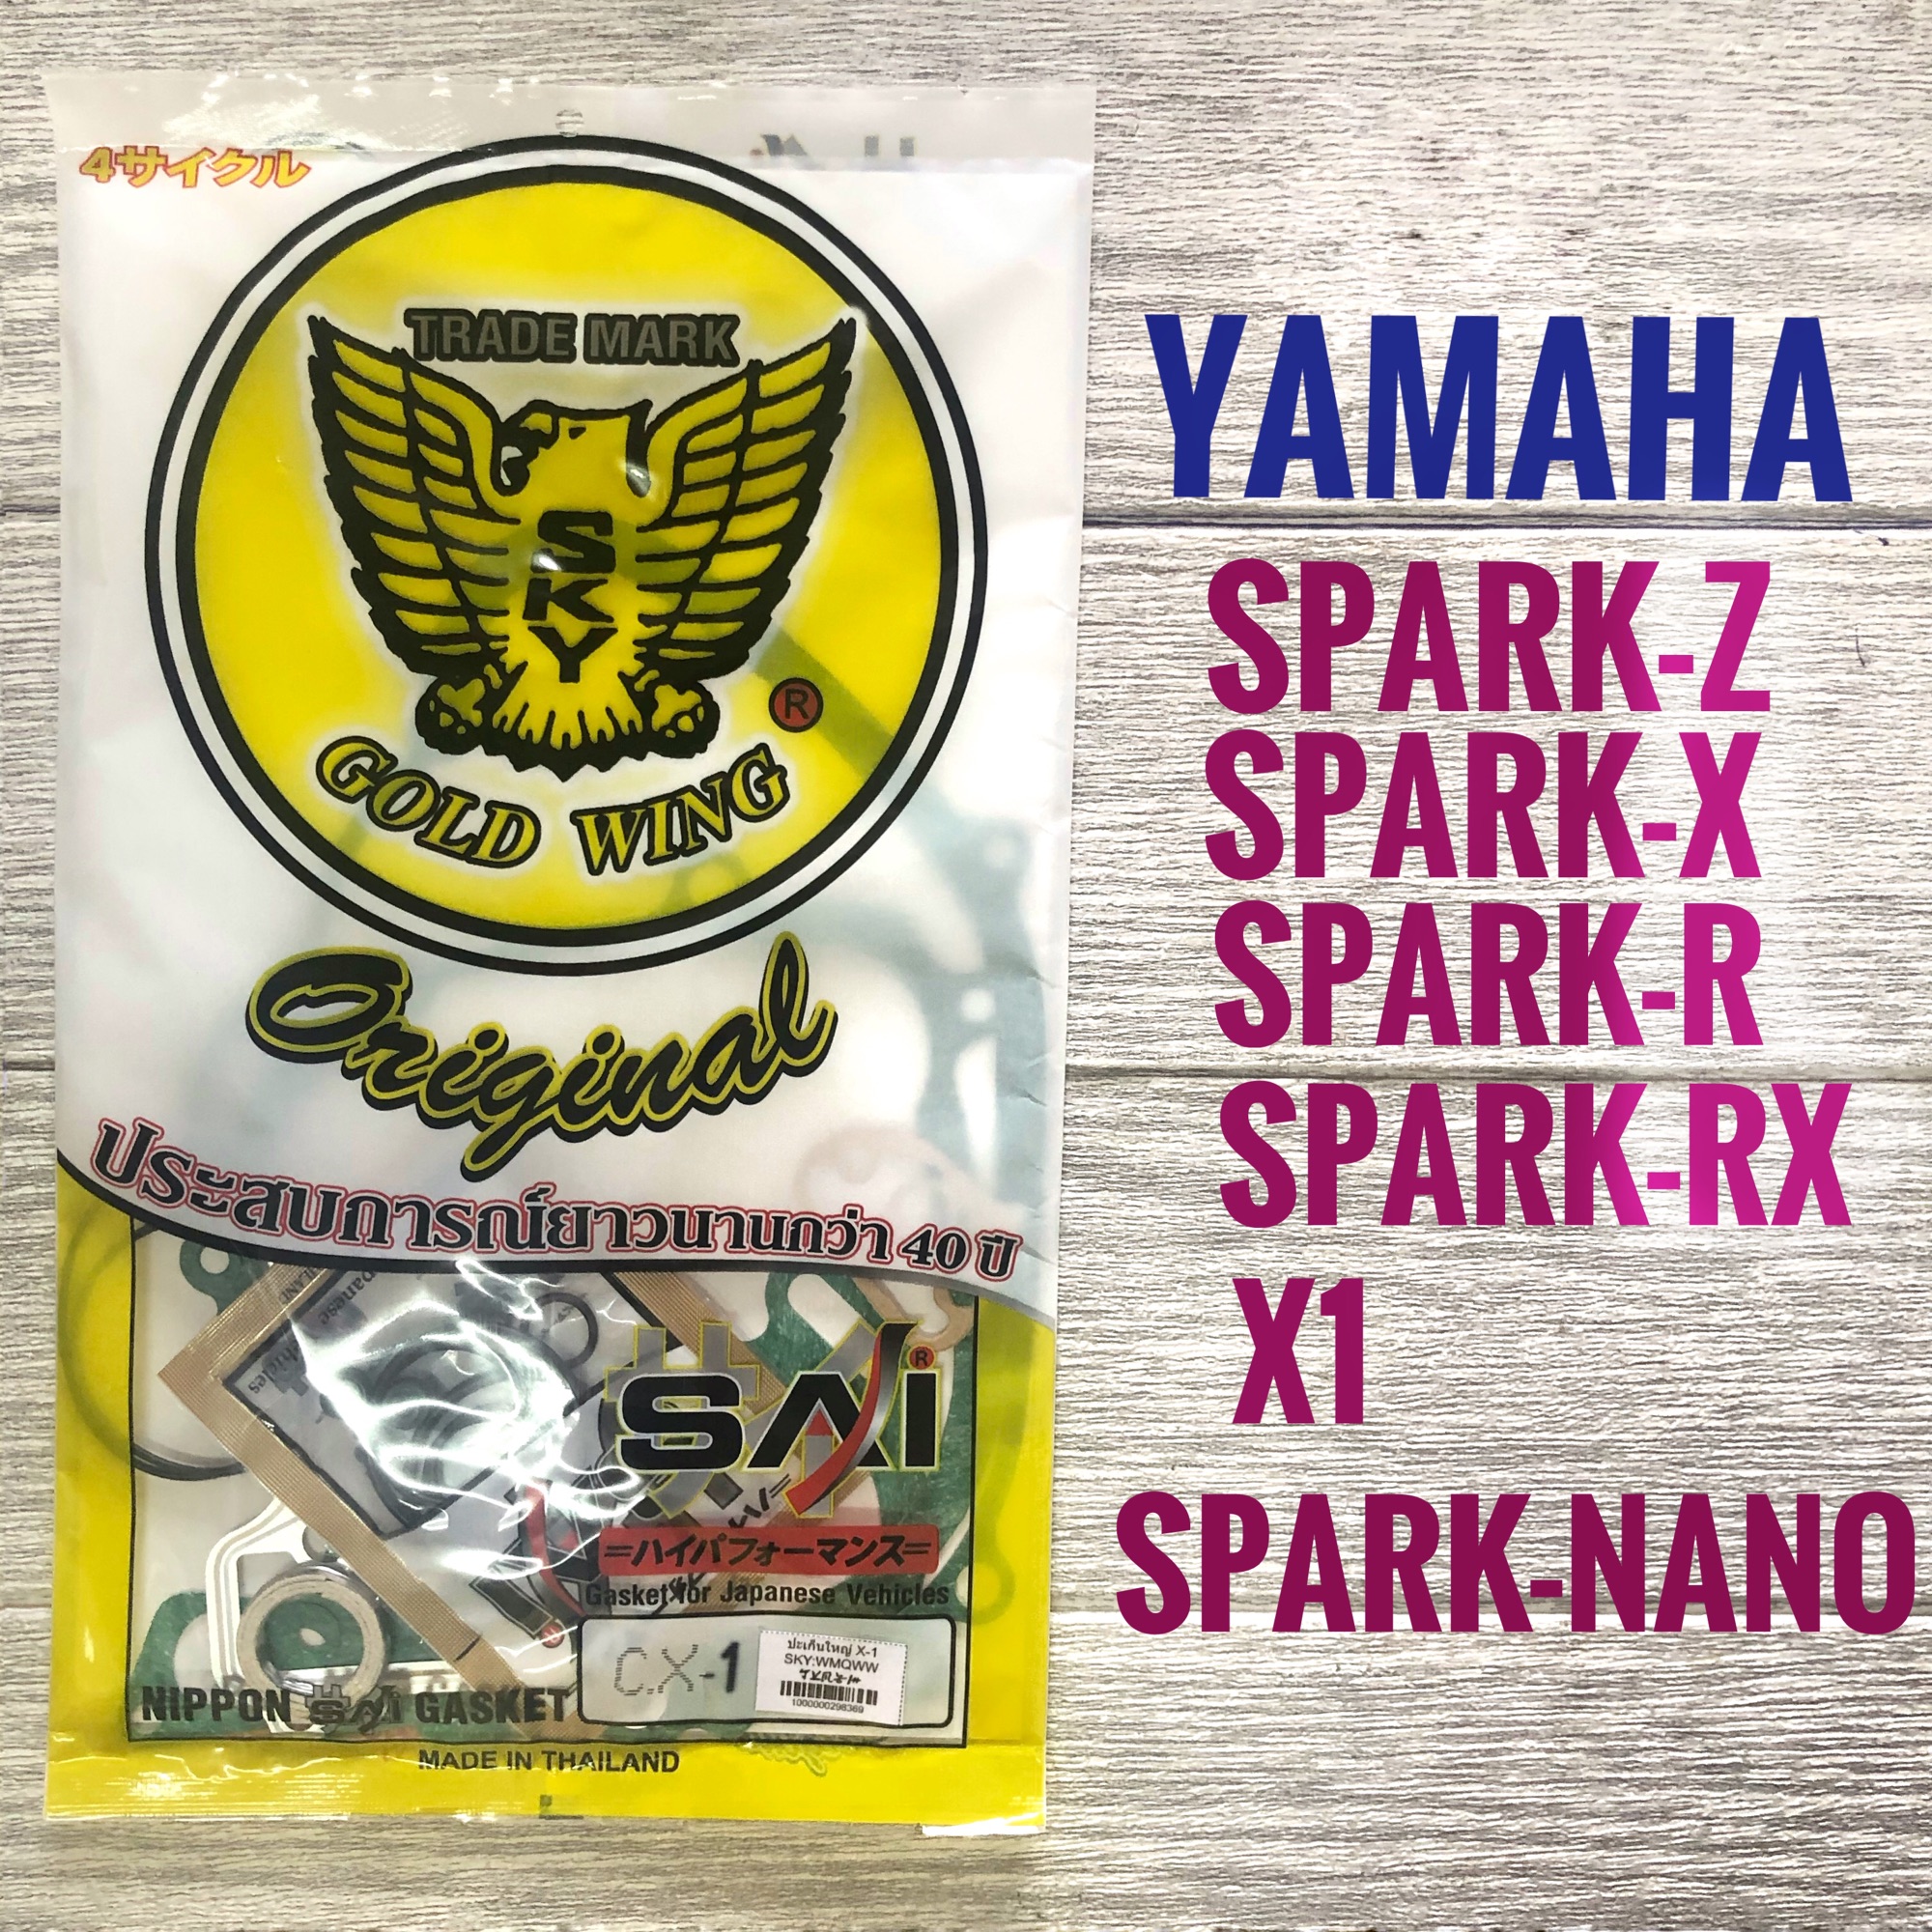 ปะเก็นชุดใหญ่ YAMAHA SPARK-Z SPARK-R SPARK-X SPARK-RX X-1 SPARK-NANO